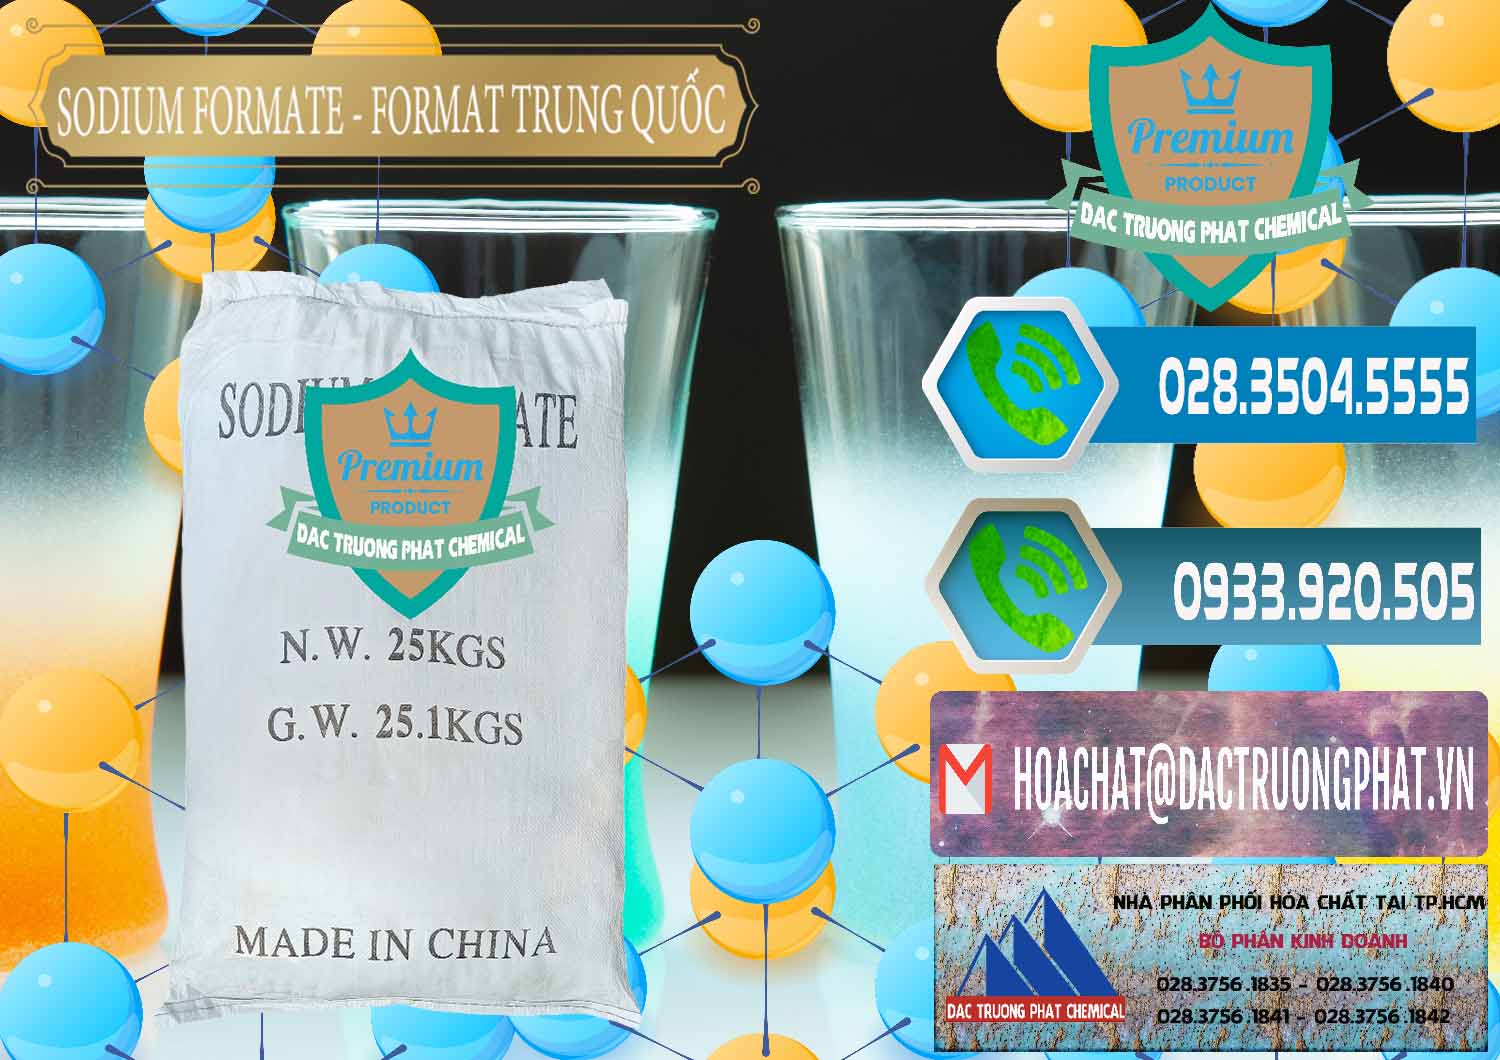 Cty kinh doanh - bán Sodium Formate - Natri Format Trung Quốc China - 0142 - Cty chuyên cung ứng - phân phối hóa chất tại TP.HCM - congtyhoachat.net